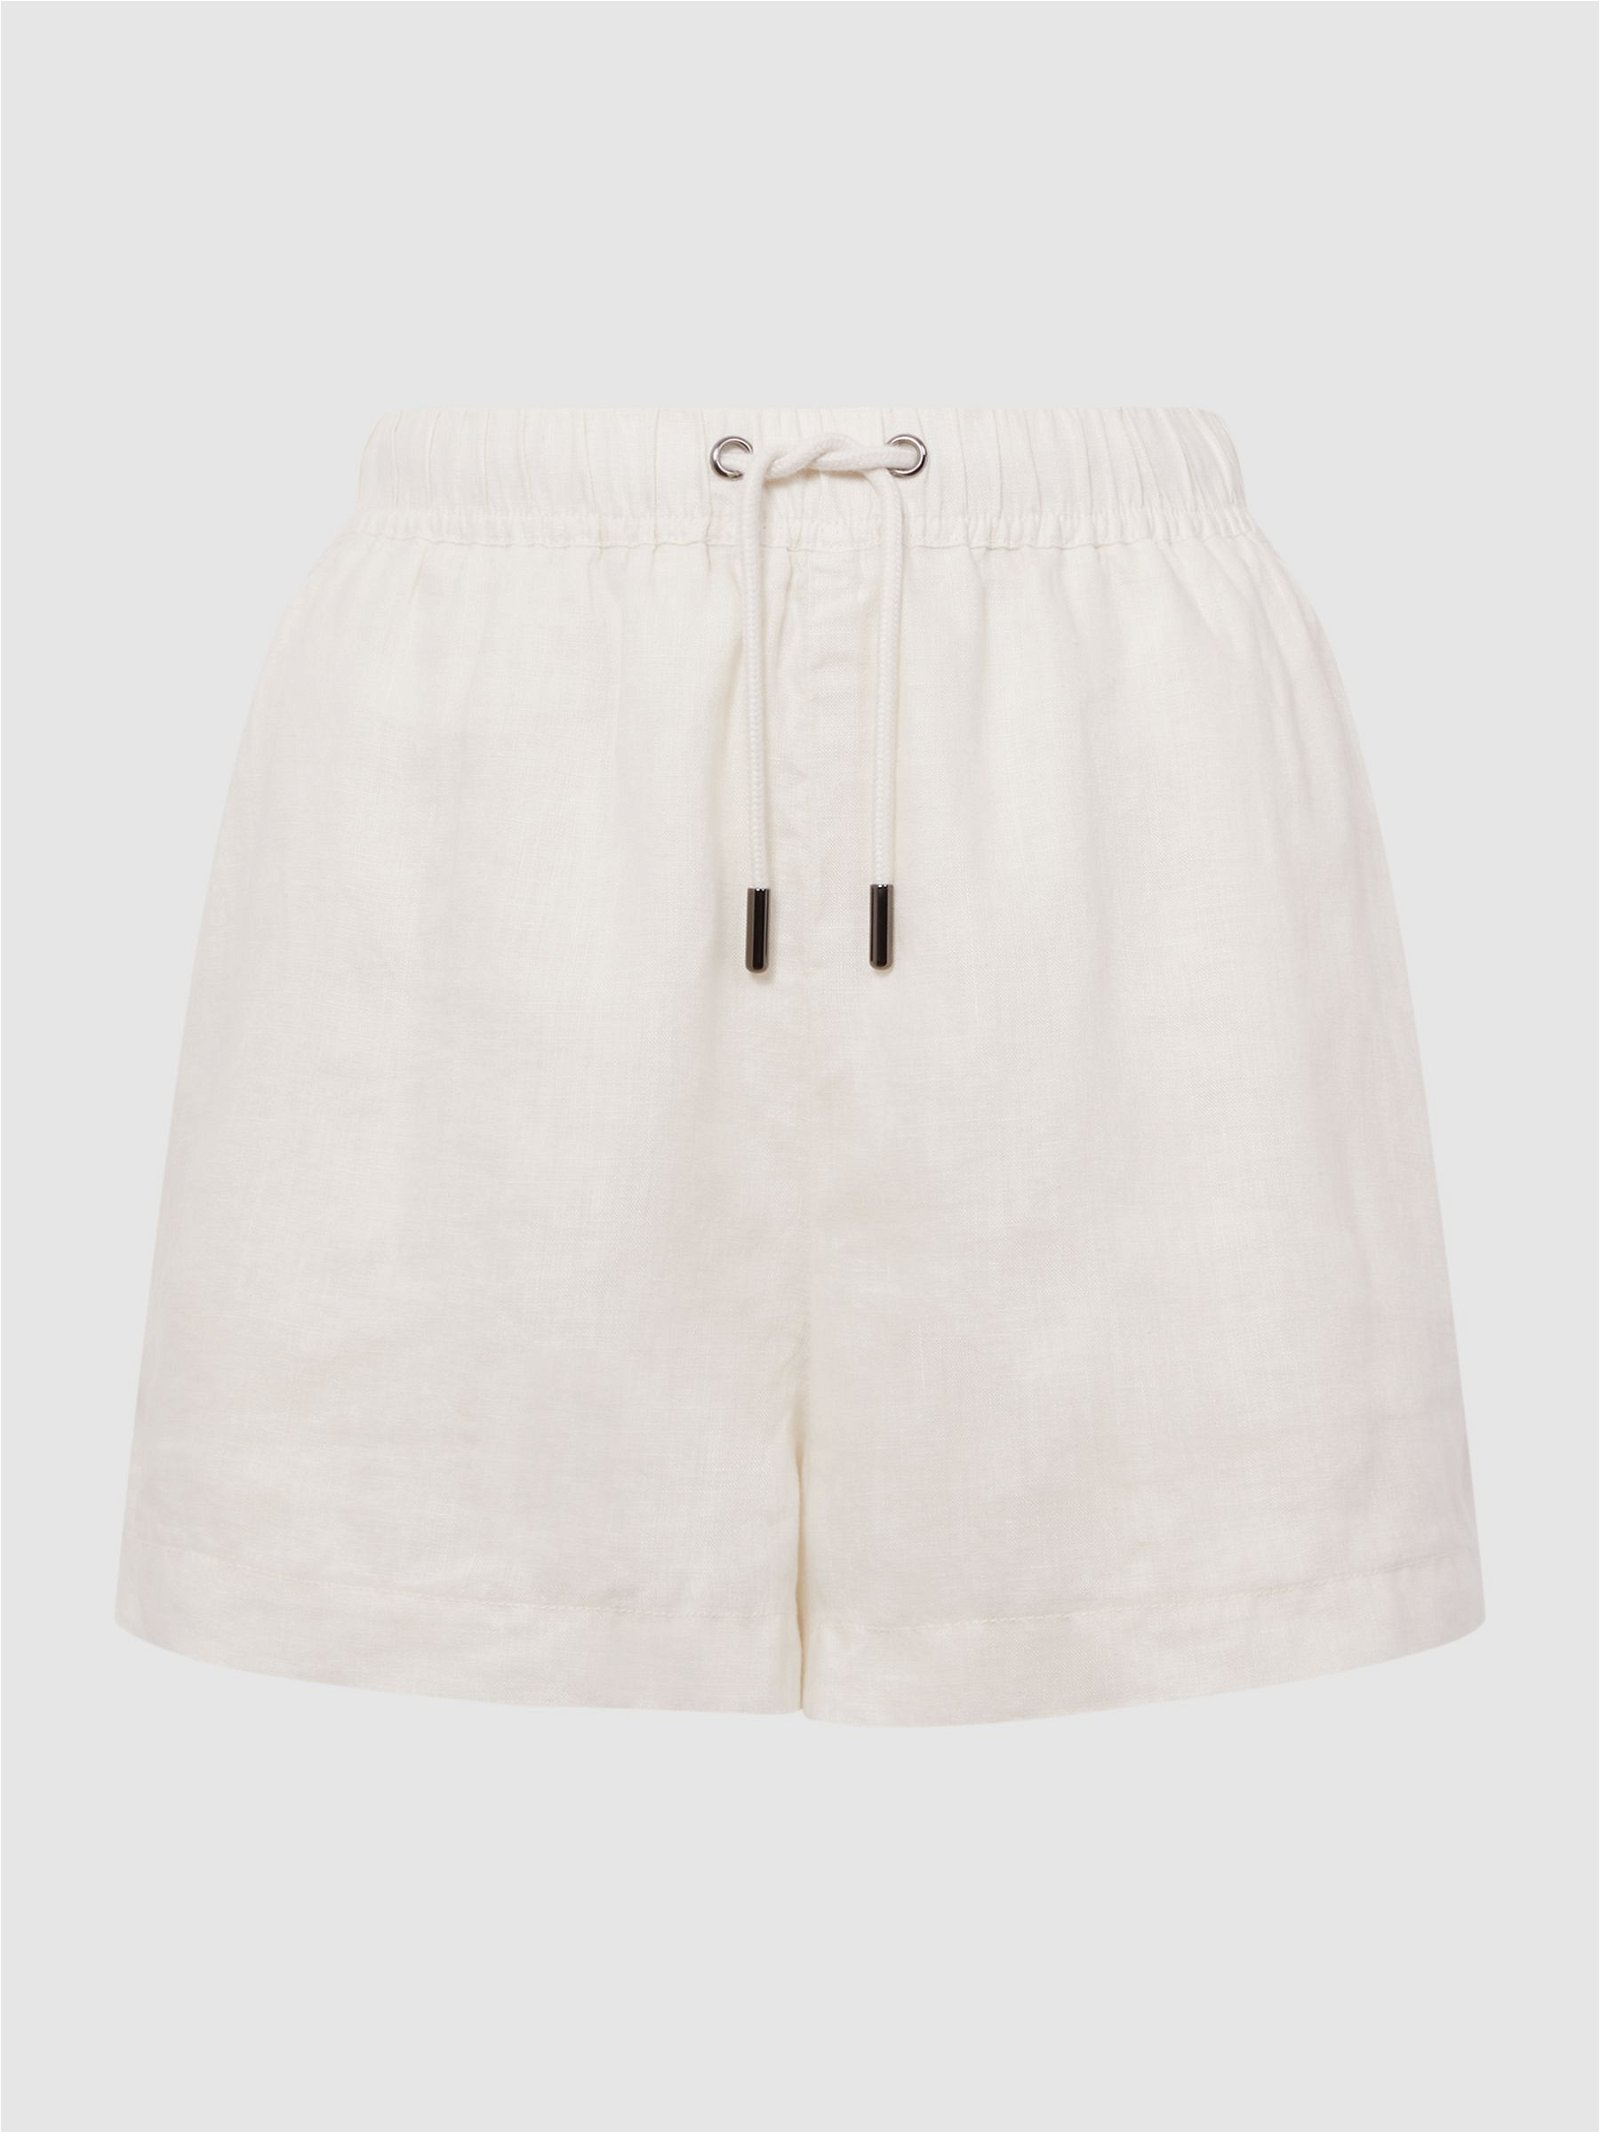 Drawstring Tencel Shorts  Women's Drawstring Shorts – Jolie